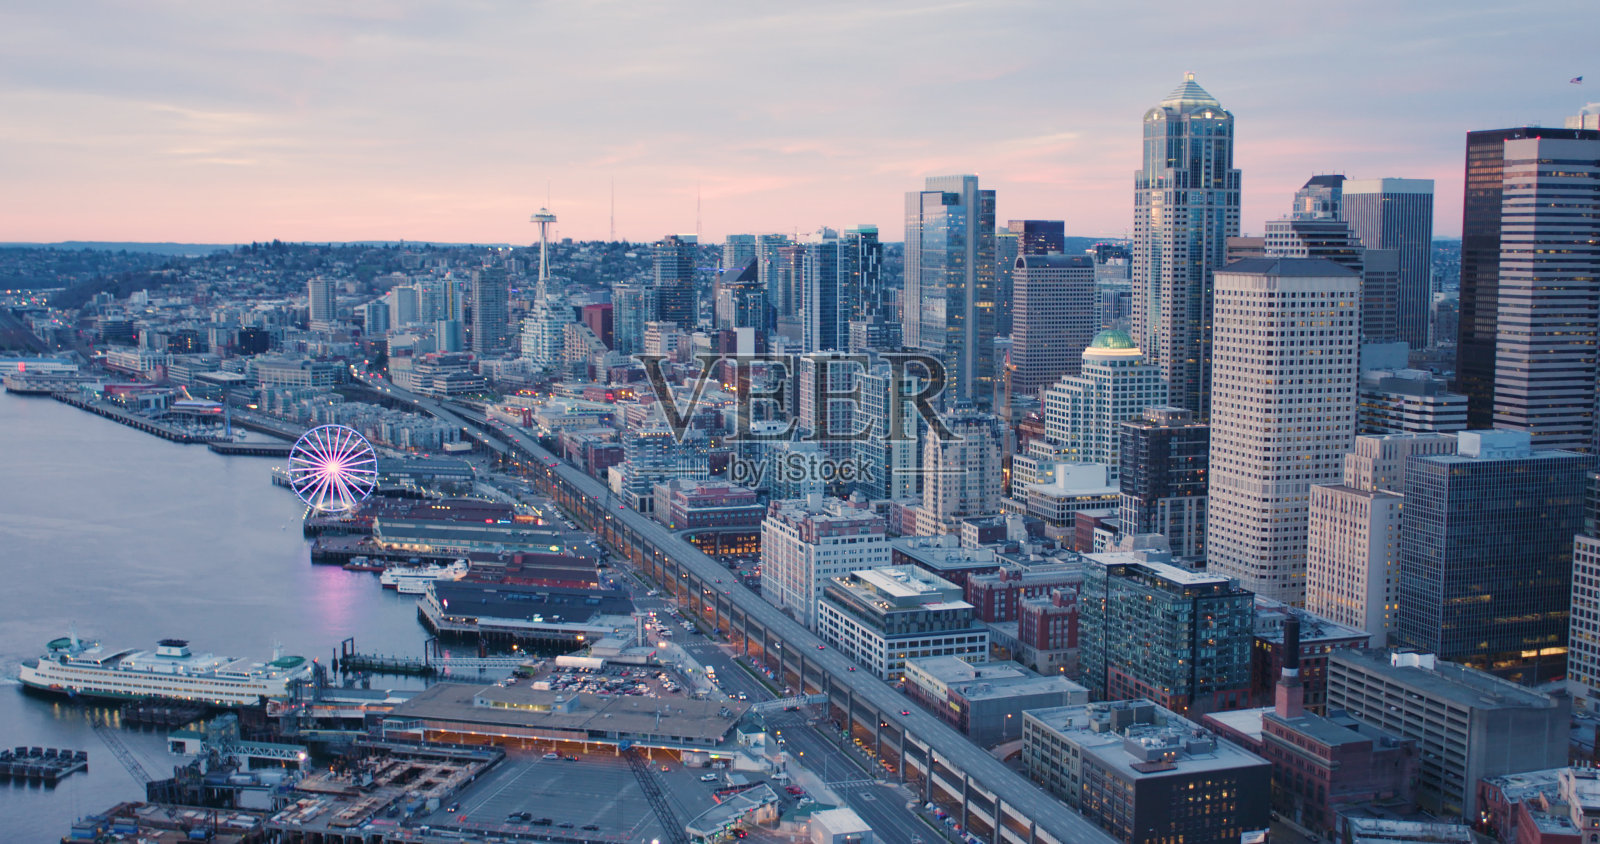 西雅图滨水码头码头市中心建筑日落景观照片摄影图片